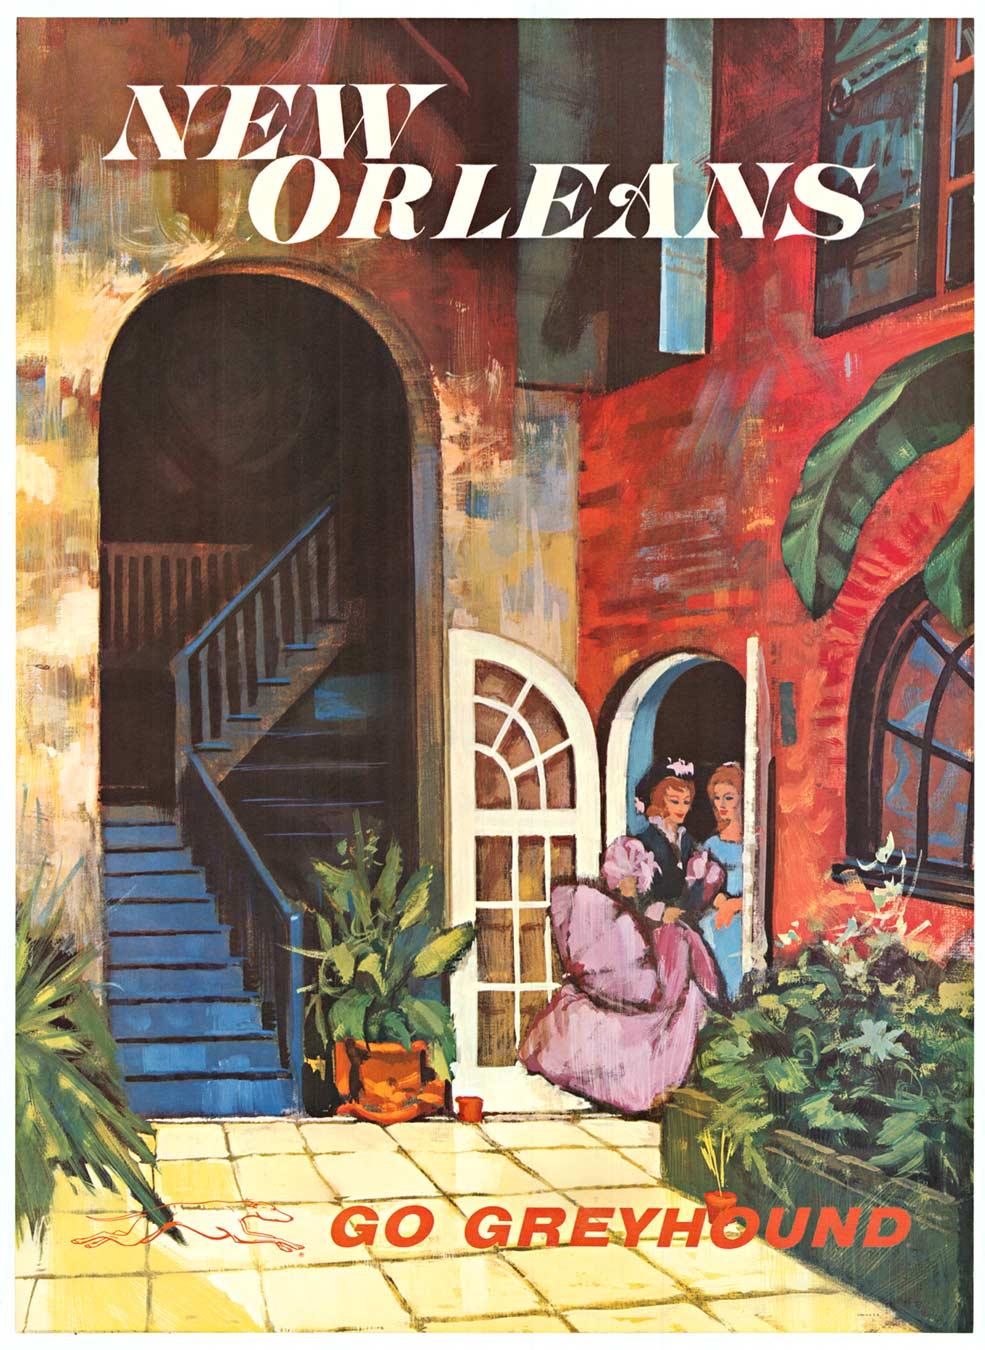 Unknown Interior Print - New Orleans Go Greyhound original vintage travel poster